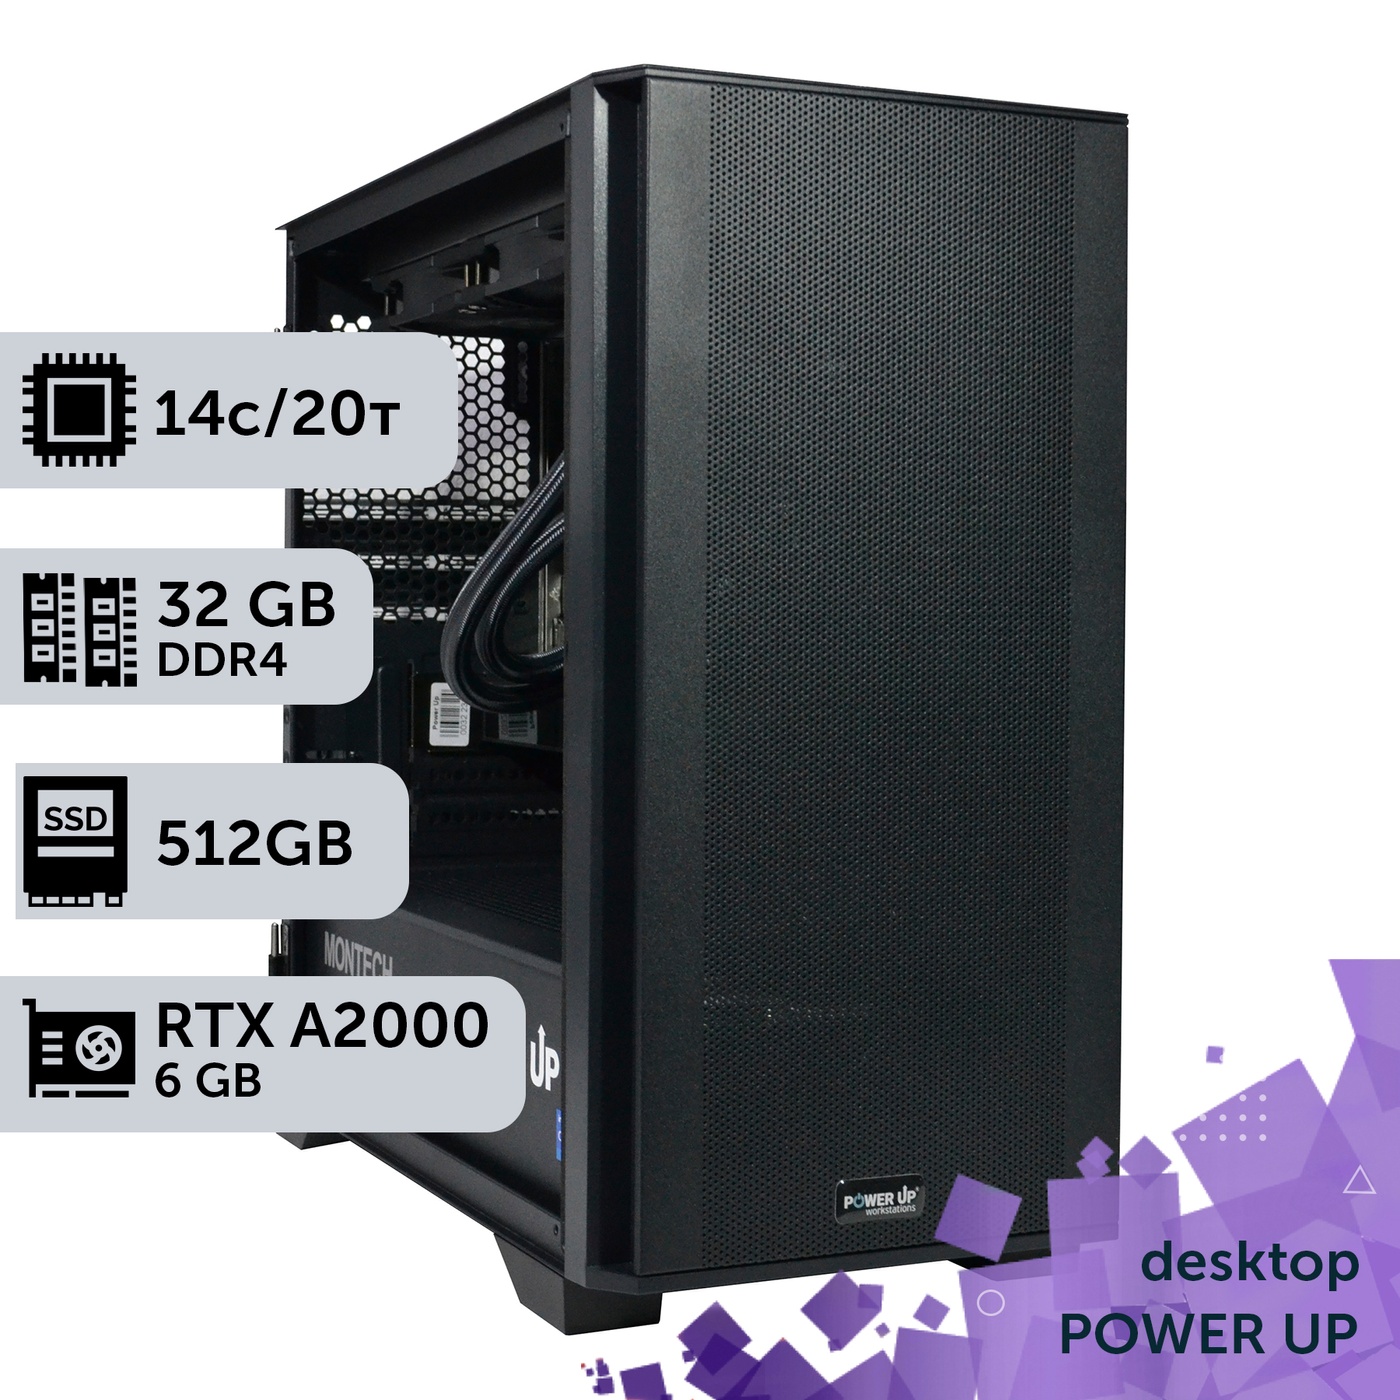 Рабочая станция PowerUp Desktop #303 Core i5 14600K/32 GB/SSD 512GB/NVIDIA Quadro RTX A2000 6GB